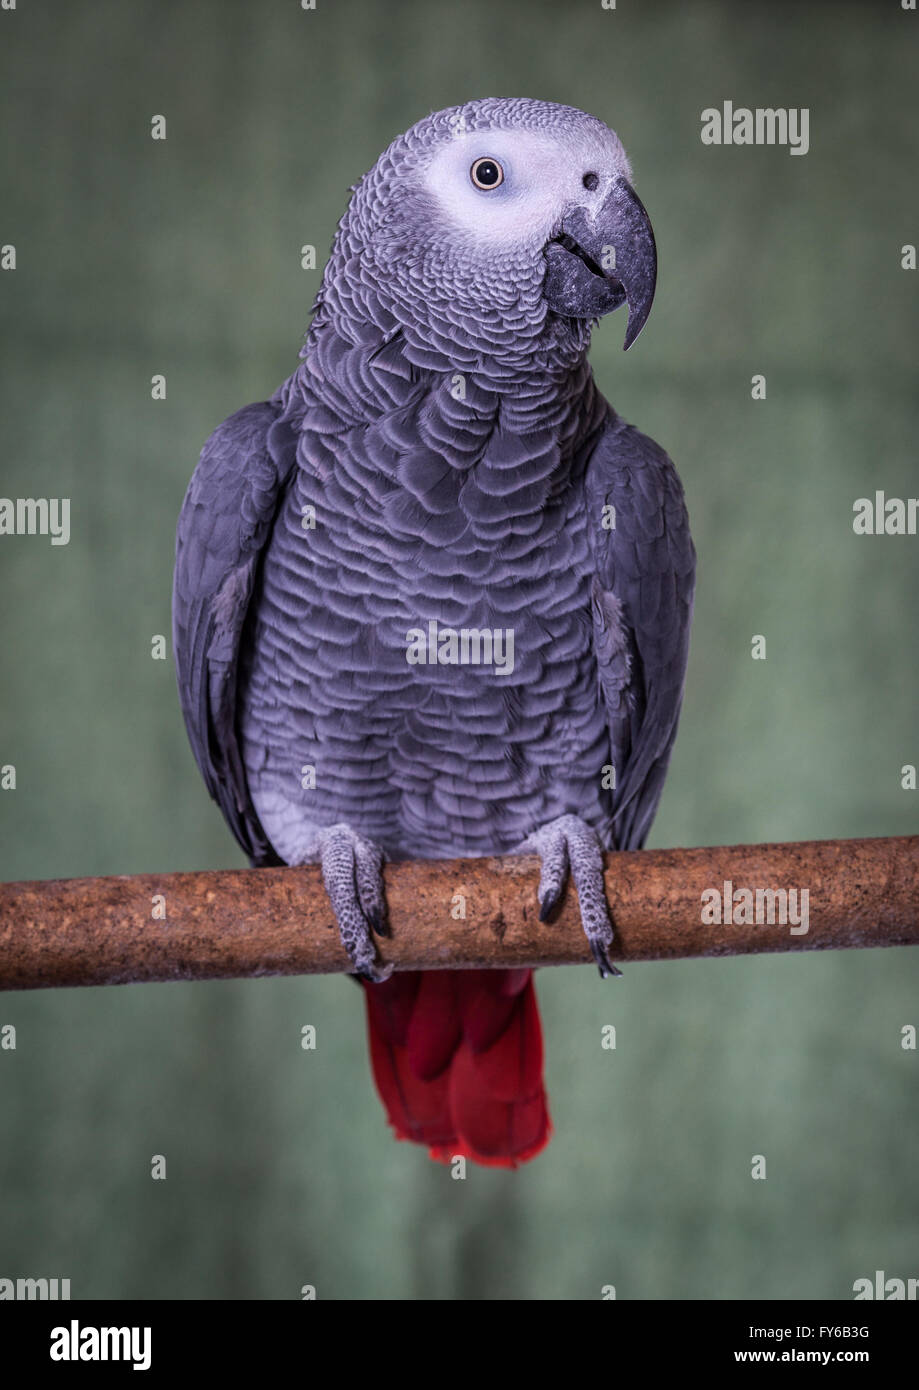 Kongo afrikanisches Grau-Papagei, stellte auf einem natürlichen Ast gegen einen hellen grünen Hintergrund.  Diese sind ein beliebtes Haustier Vogel aufgrund ihrer Stockfoto